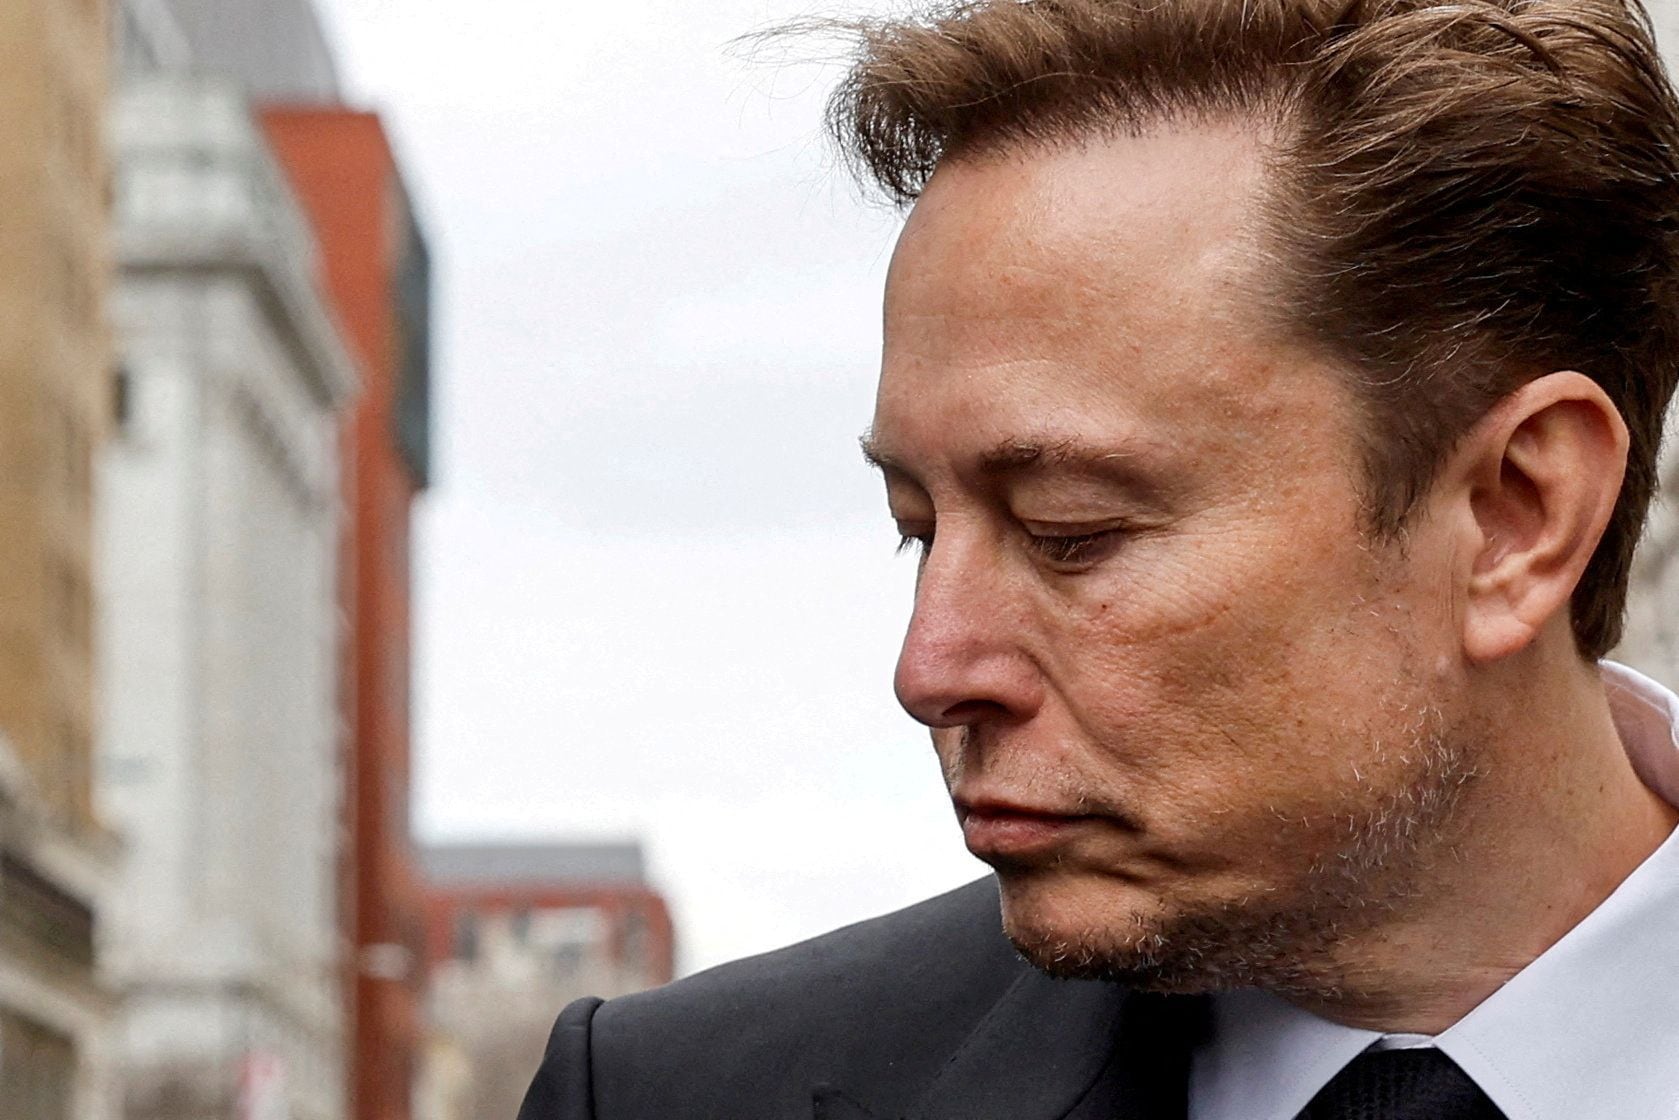 Este litigio no es el único frente judicial que Musk enfrenta. (REUTERS/Jonathan Ernst/File Photo)